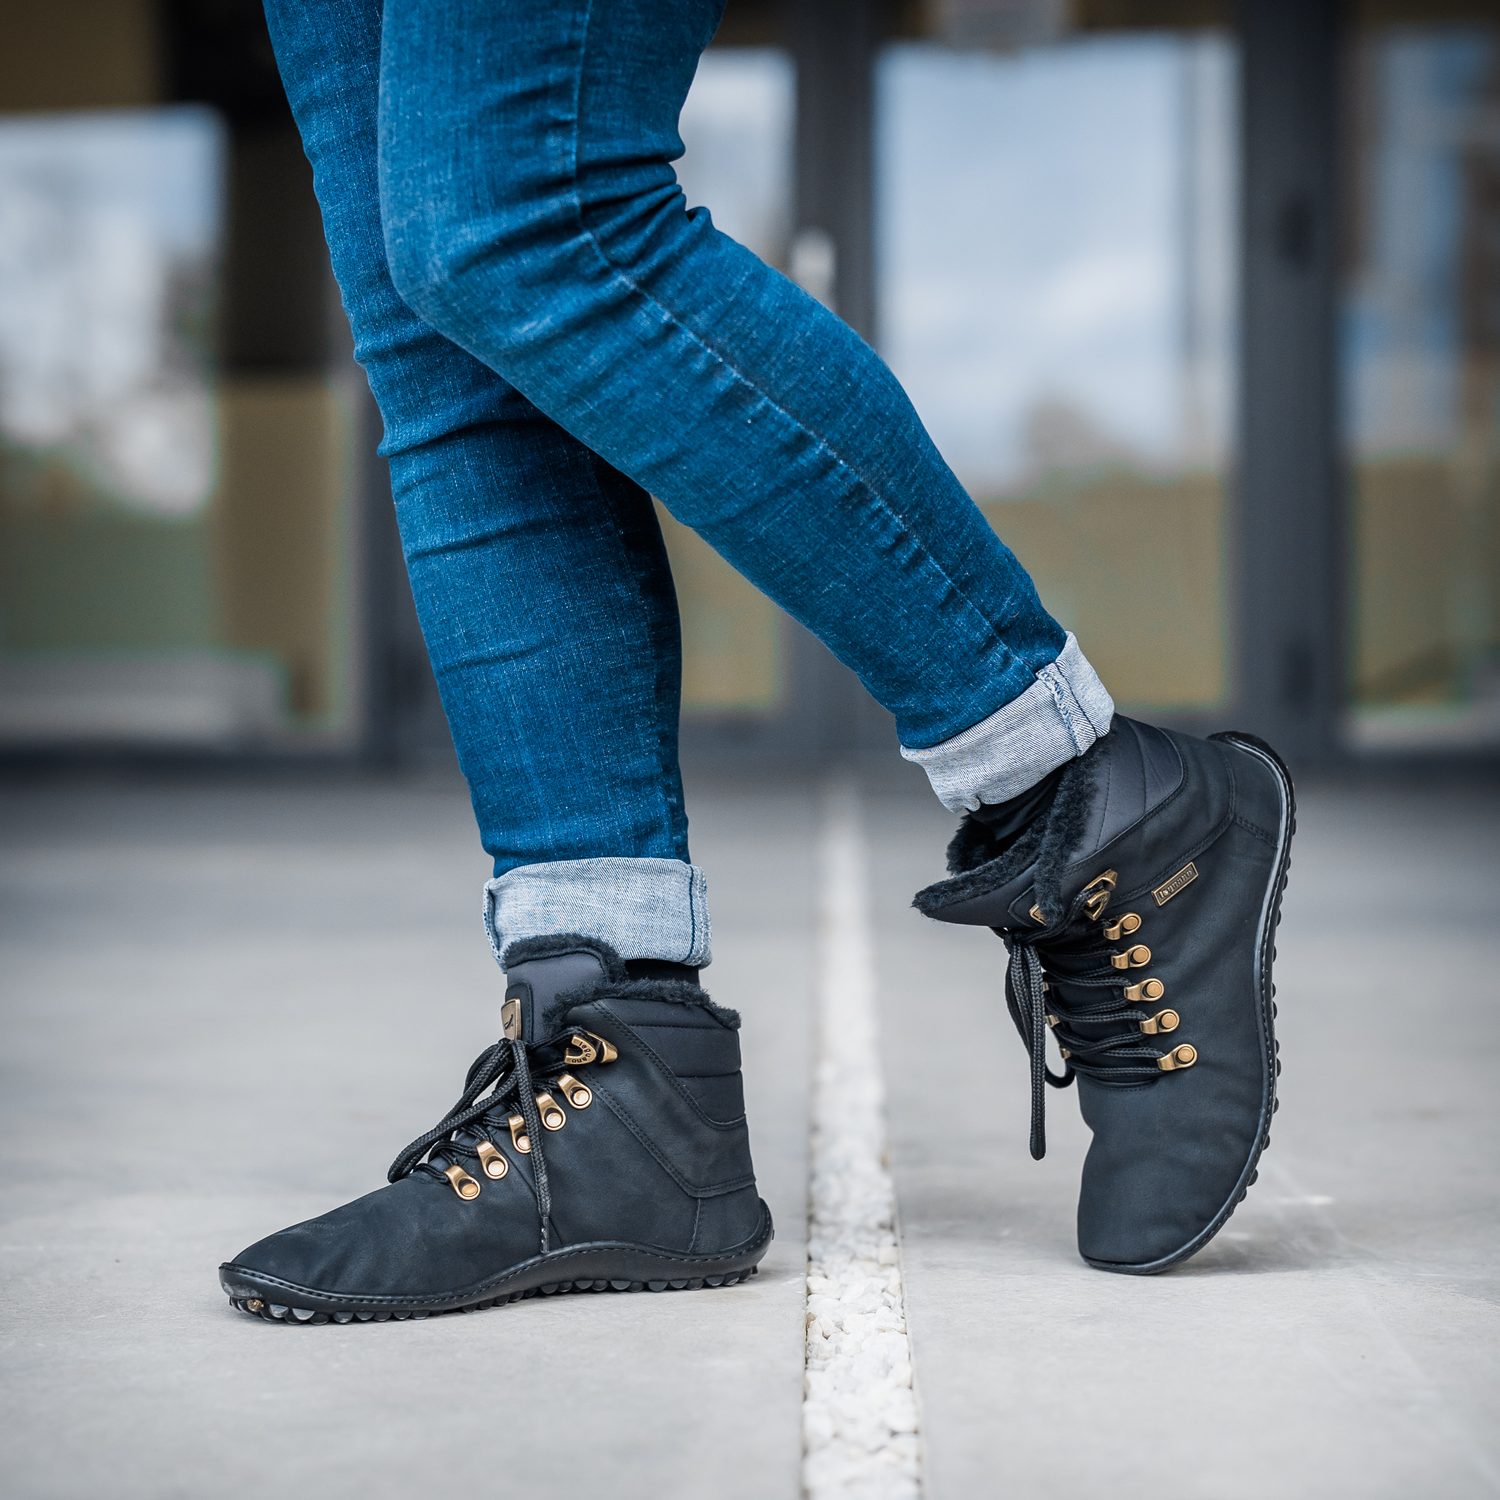 naBOSo – Barefooty a zima – je v tenké podrážce skutečně teplo? – Zažijte  pohodlí barefoot bot.